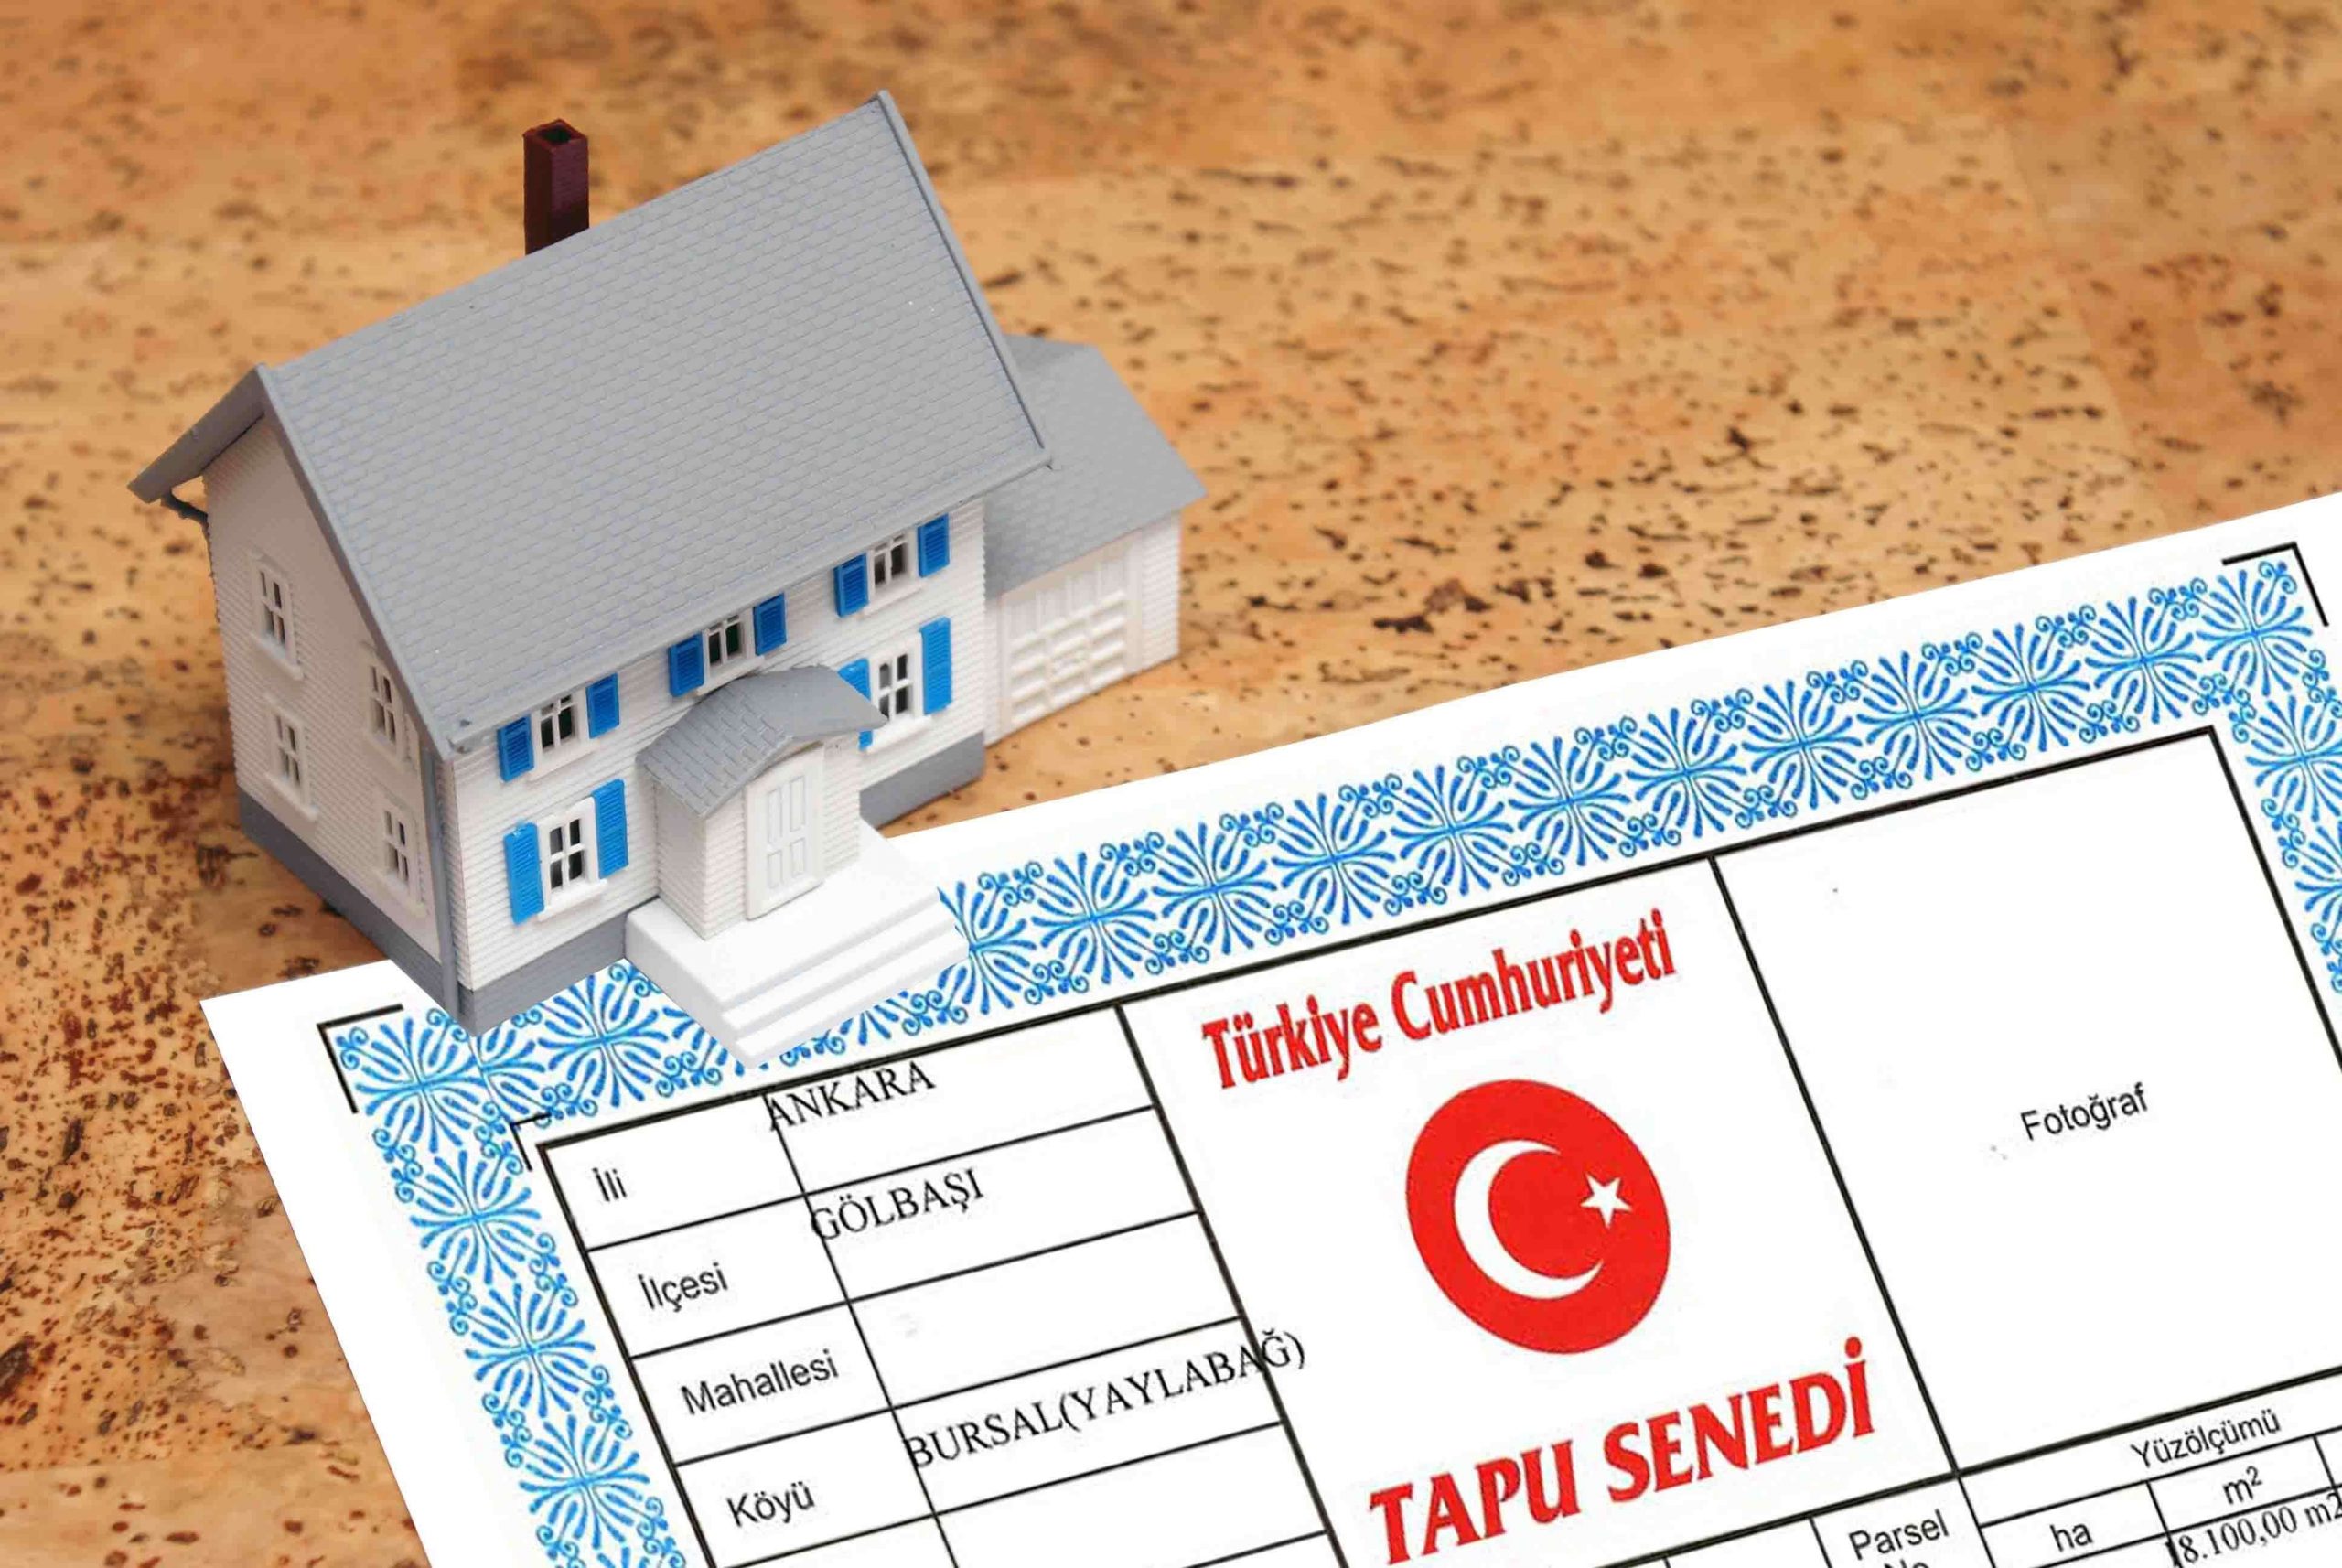 Turkish Land Registry